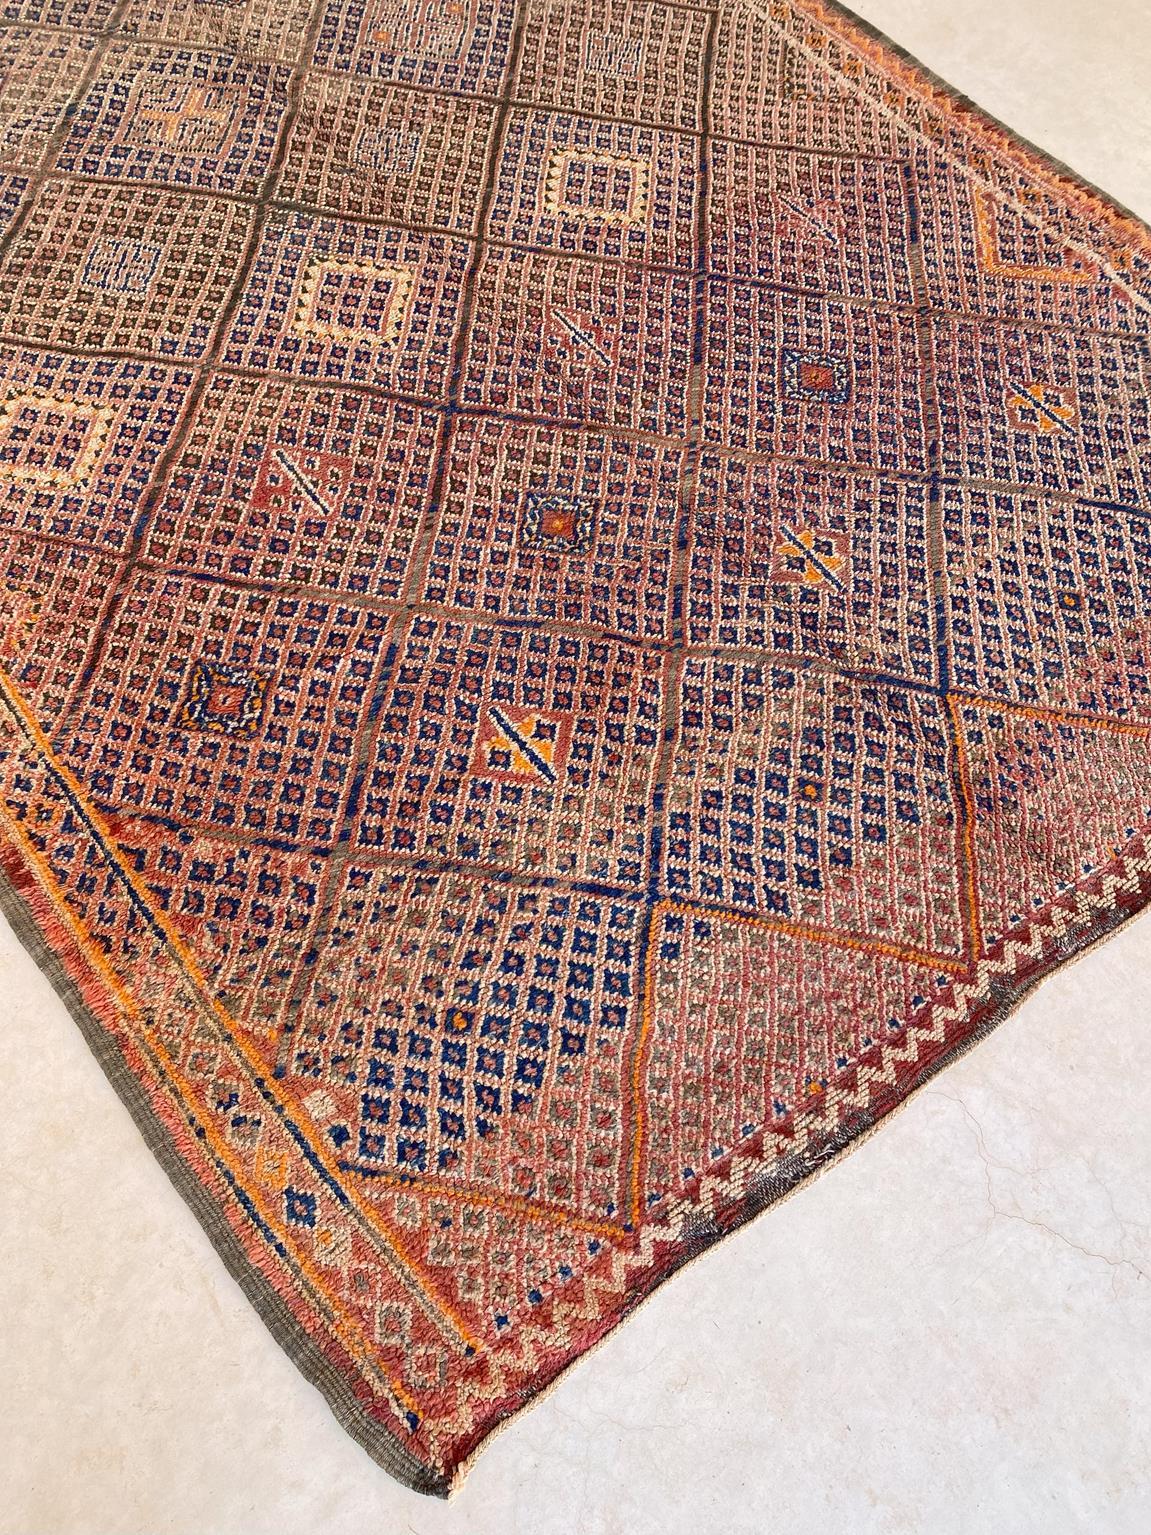 Vintage Beni Mguild rug - Orange/terracotta/blue - 6.1x9.8feet / 186x298cm For Sale 1